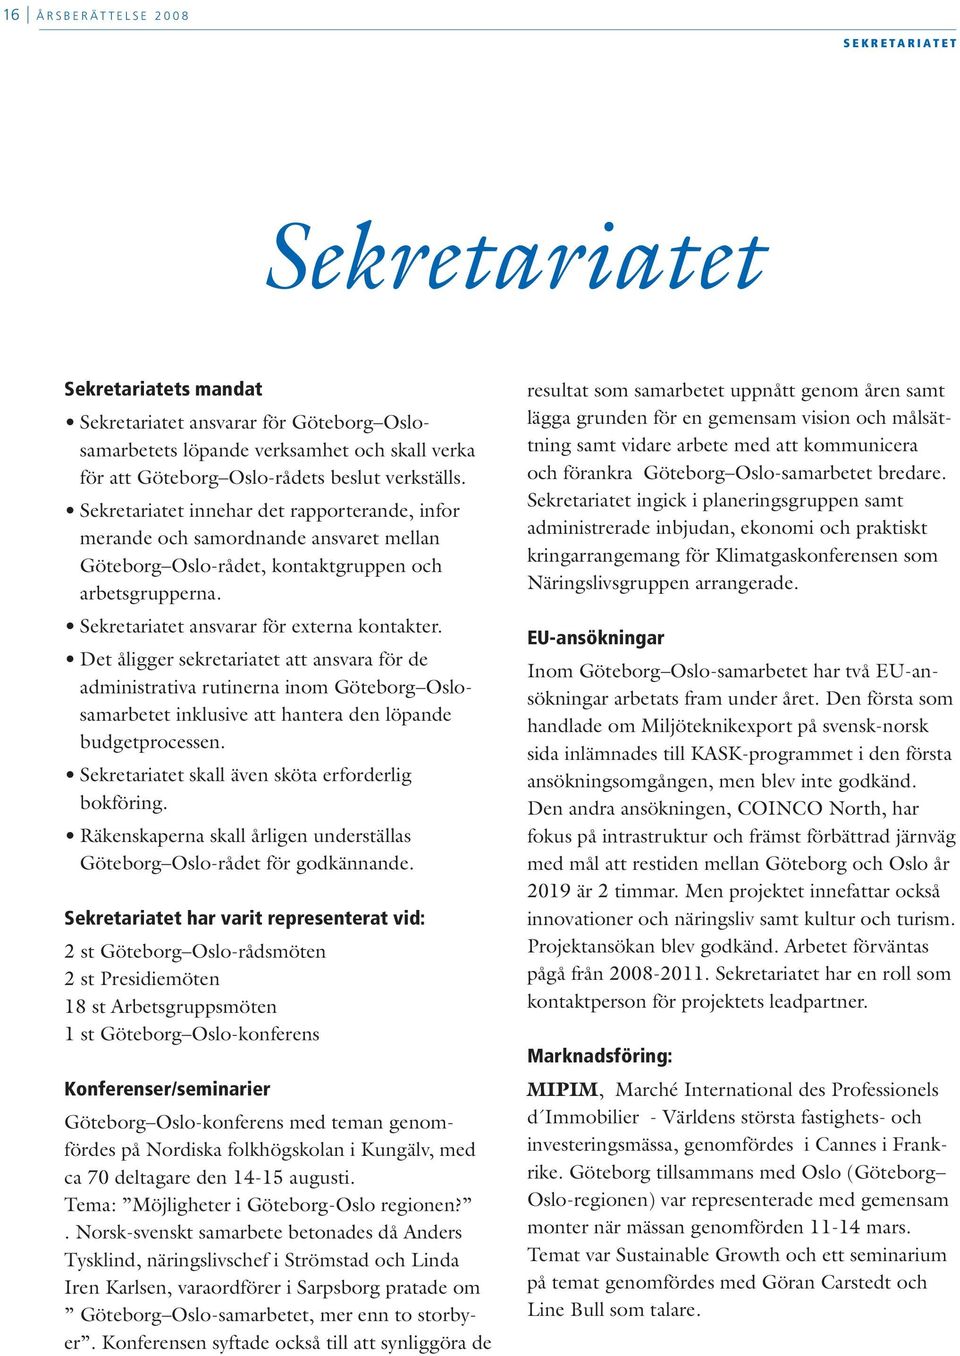 Sekretariatet ansvarar för externa kontakter. Det åligger sekretariatet att ansvara för de administrativa rutinerna inom Göteborg Oslosamarbetet inklusive att hantera den löpande budgetprocessen.